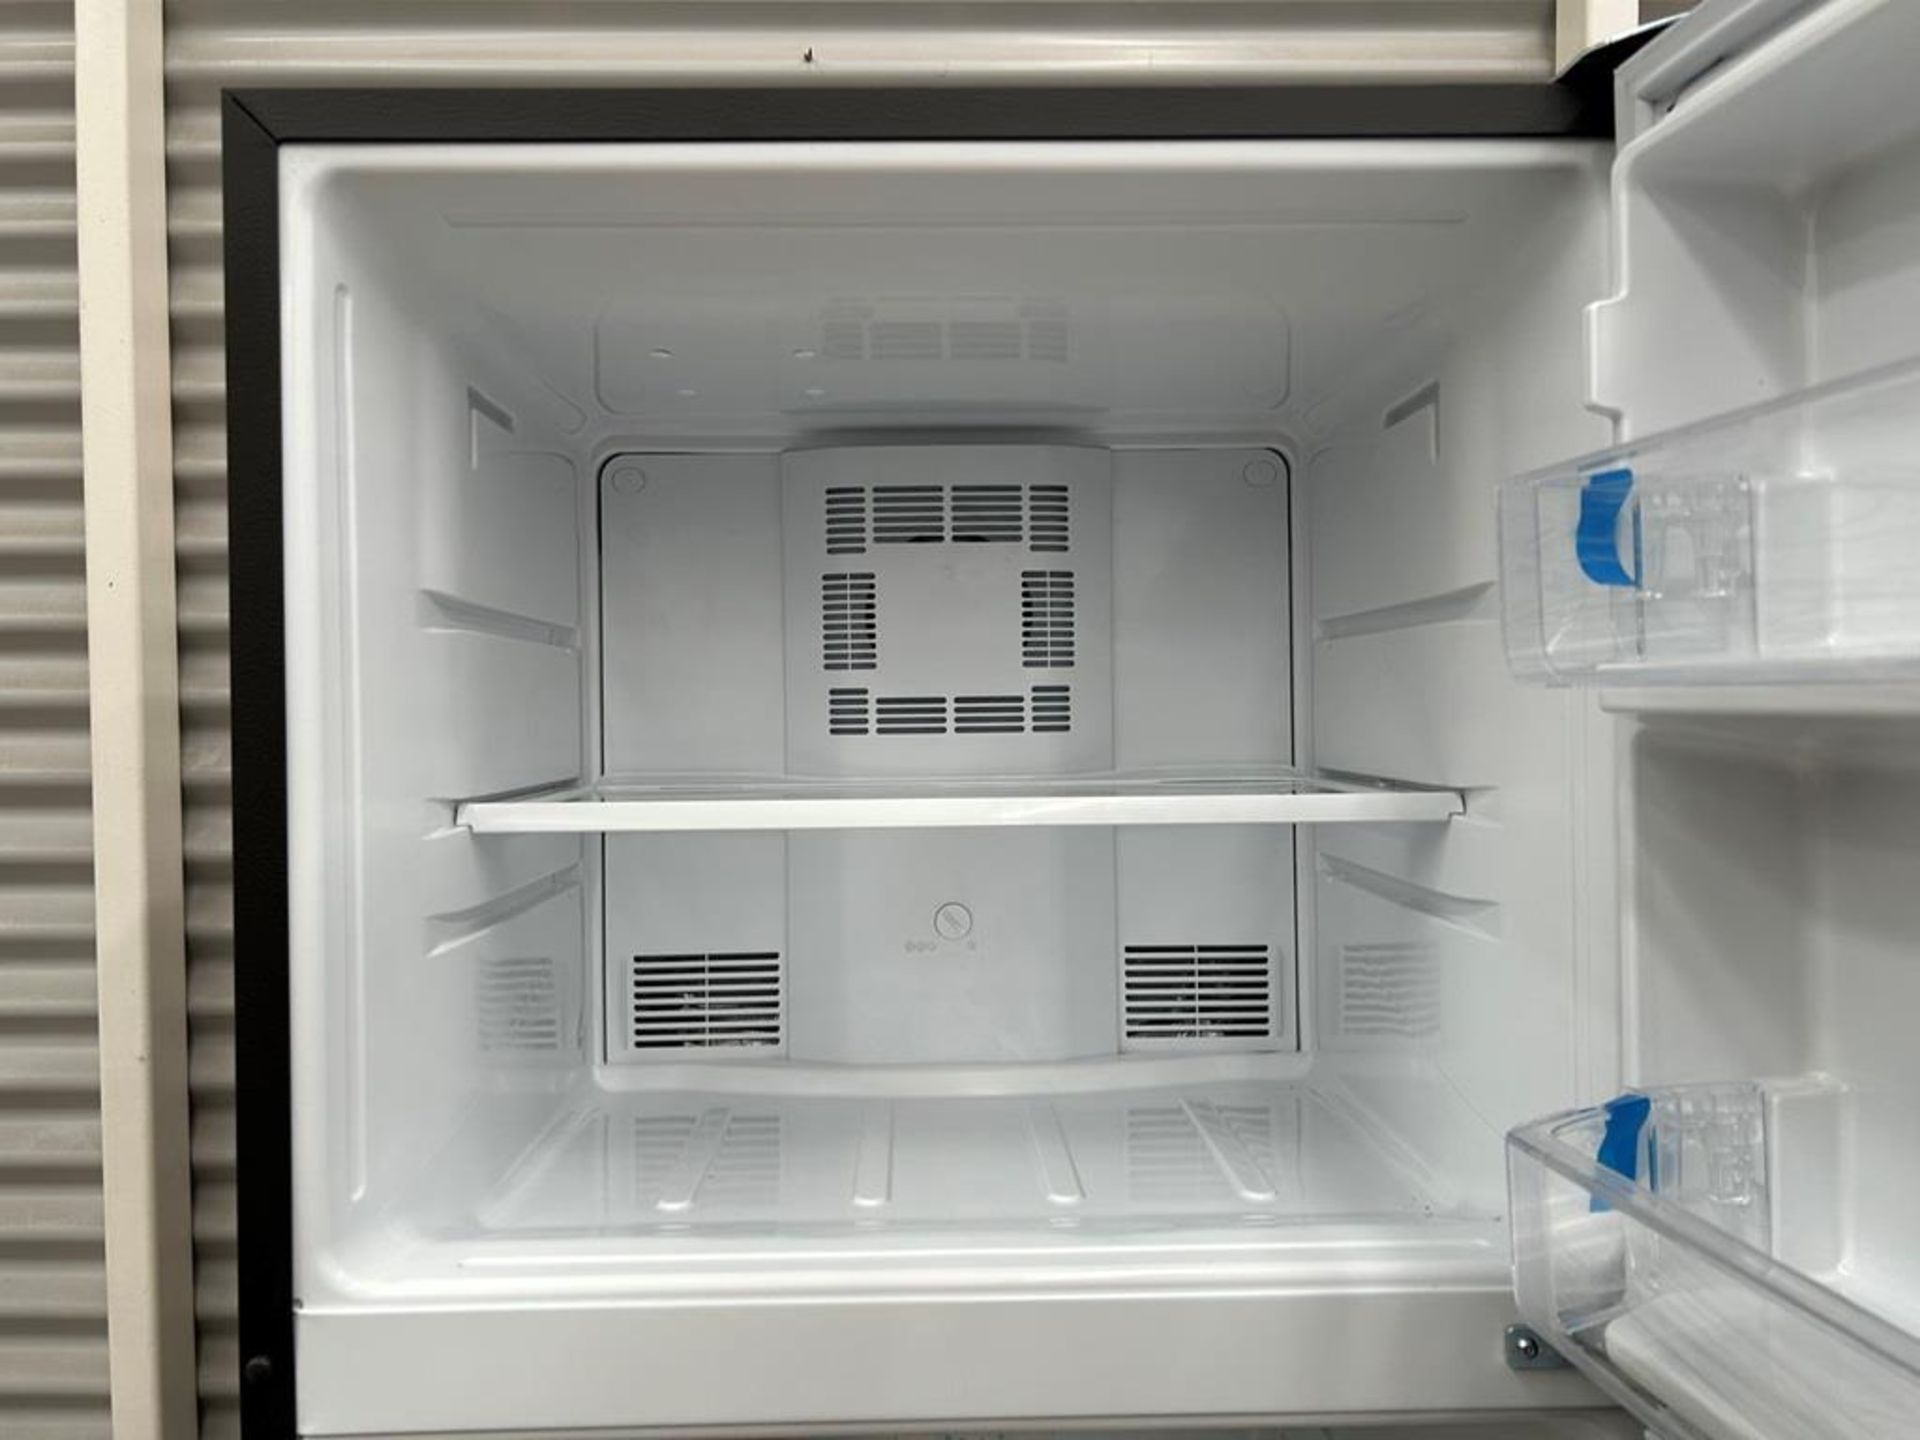 Lote de 2 refrigeradores contiene: 1 Refrigerador Marca MABE, Modelo RME360PVMRM0, Serie 04453, Col - Image 7 of 16